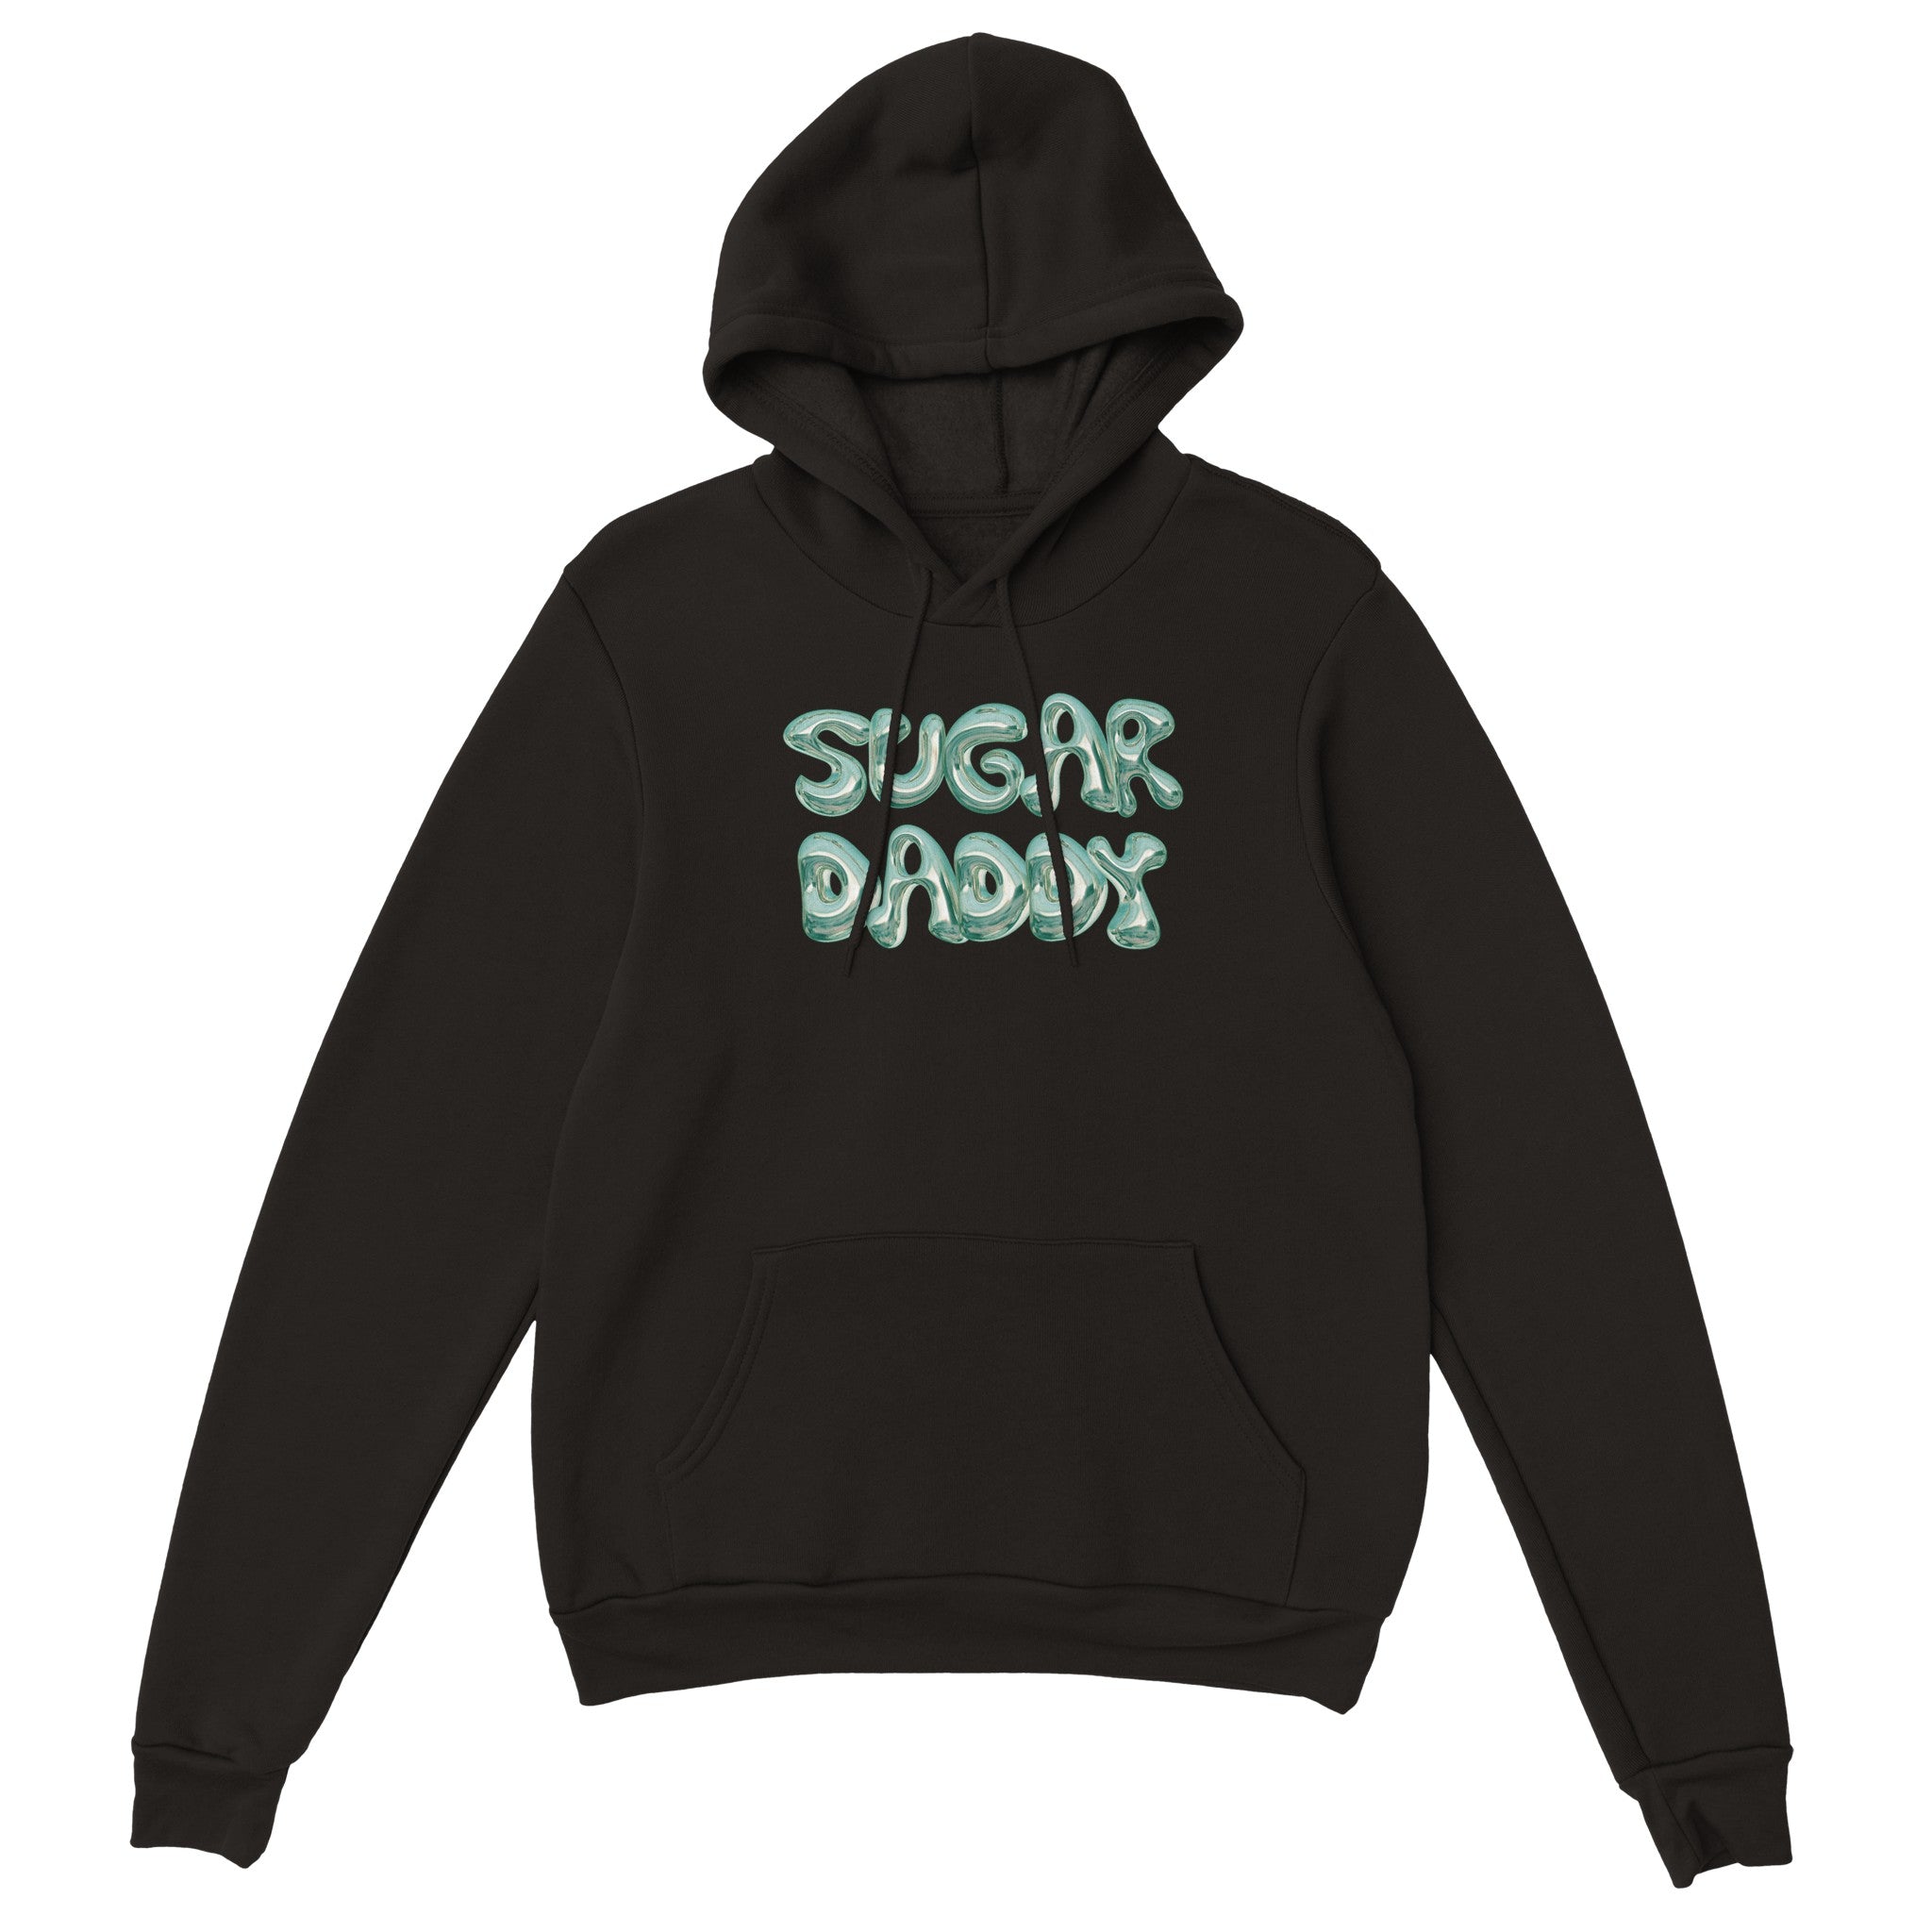 'Sugar Daddy' hoodie - In Print We Trust